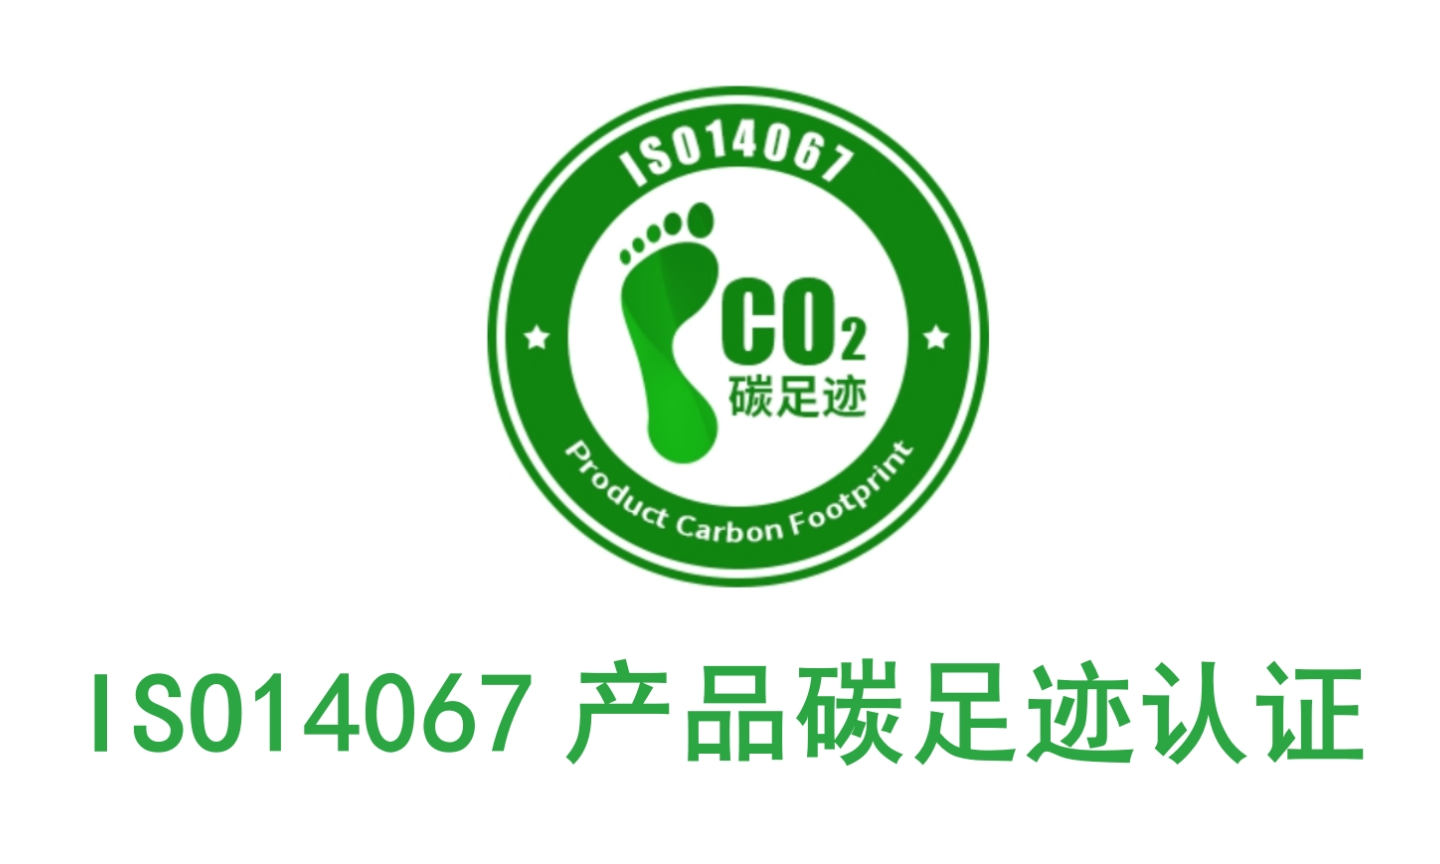 江门办理碳足迹认证的公司,碳足迹认证